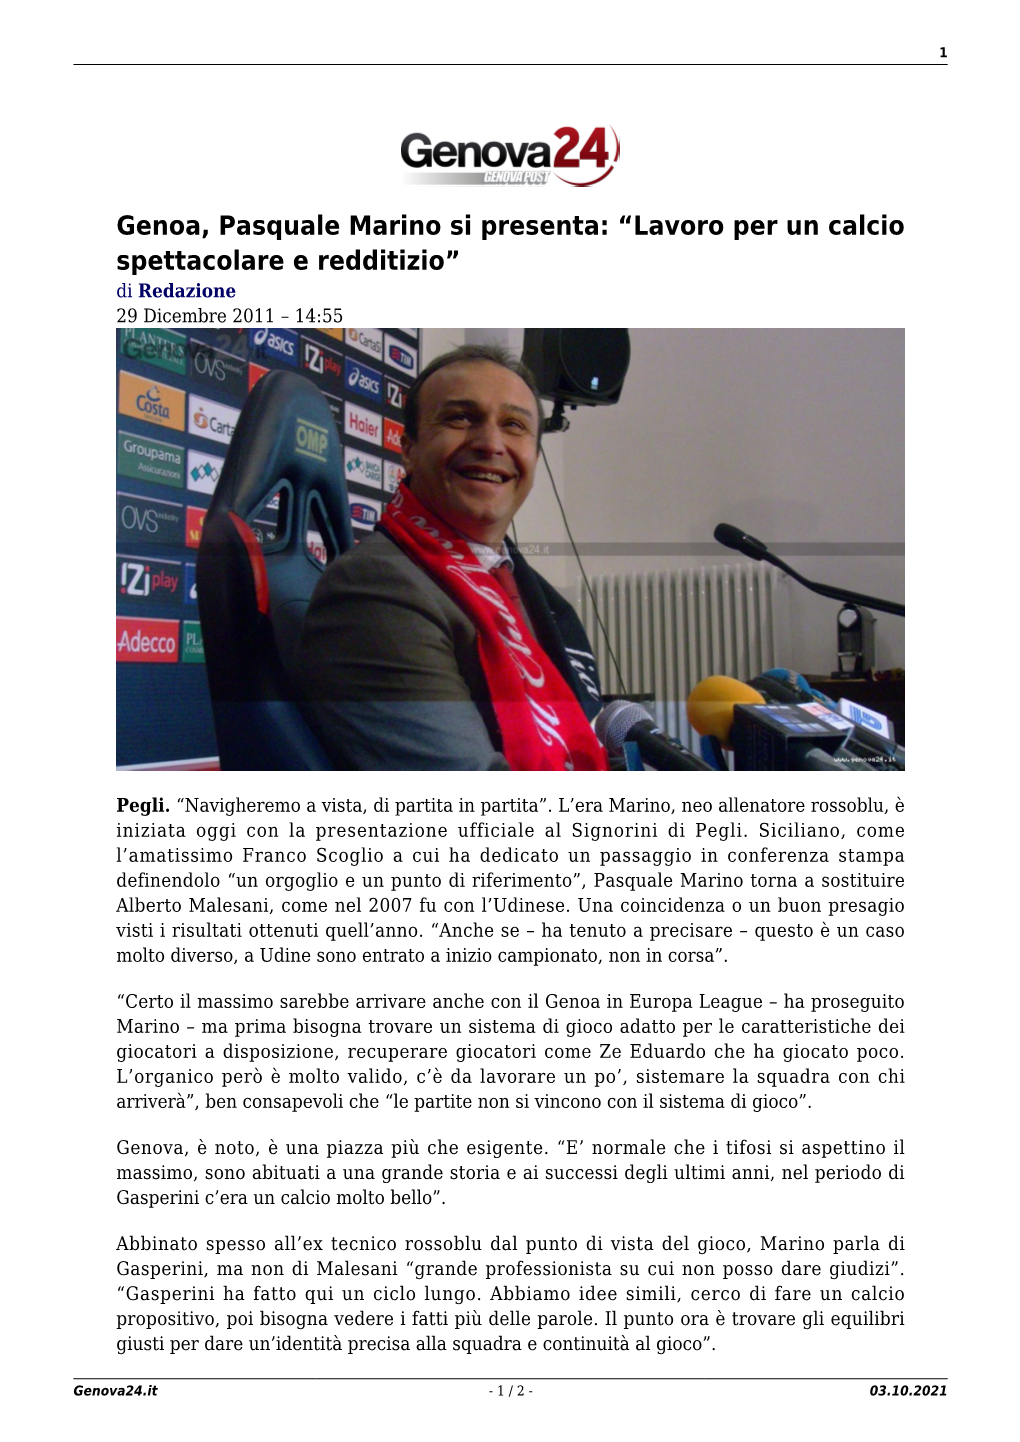 Genoa, Pasquale Marino Si Presenta: “Lavoro Per Un Calcio Spettacolare E Redditizio” Di Redazione 29 Dicembre 2011 – 14:55